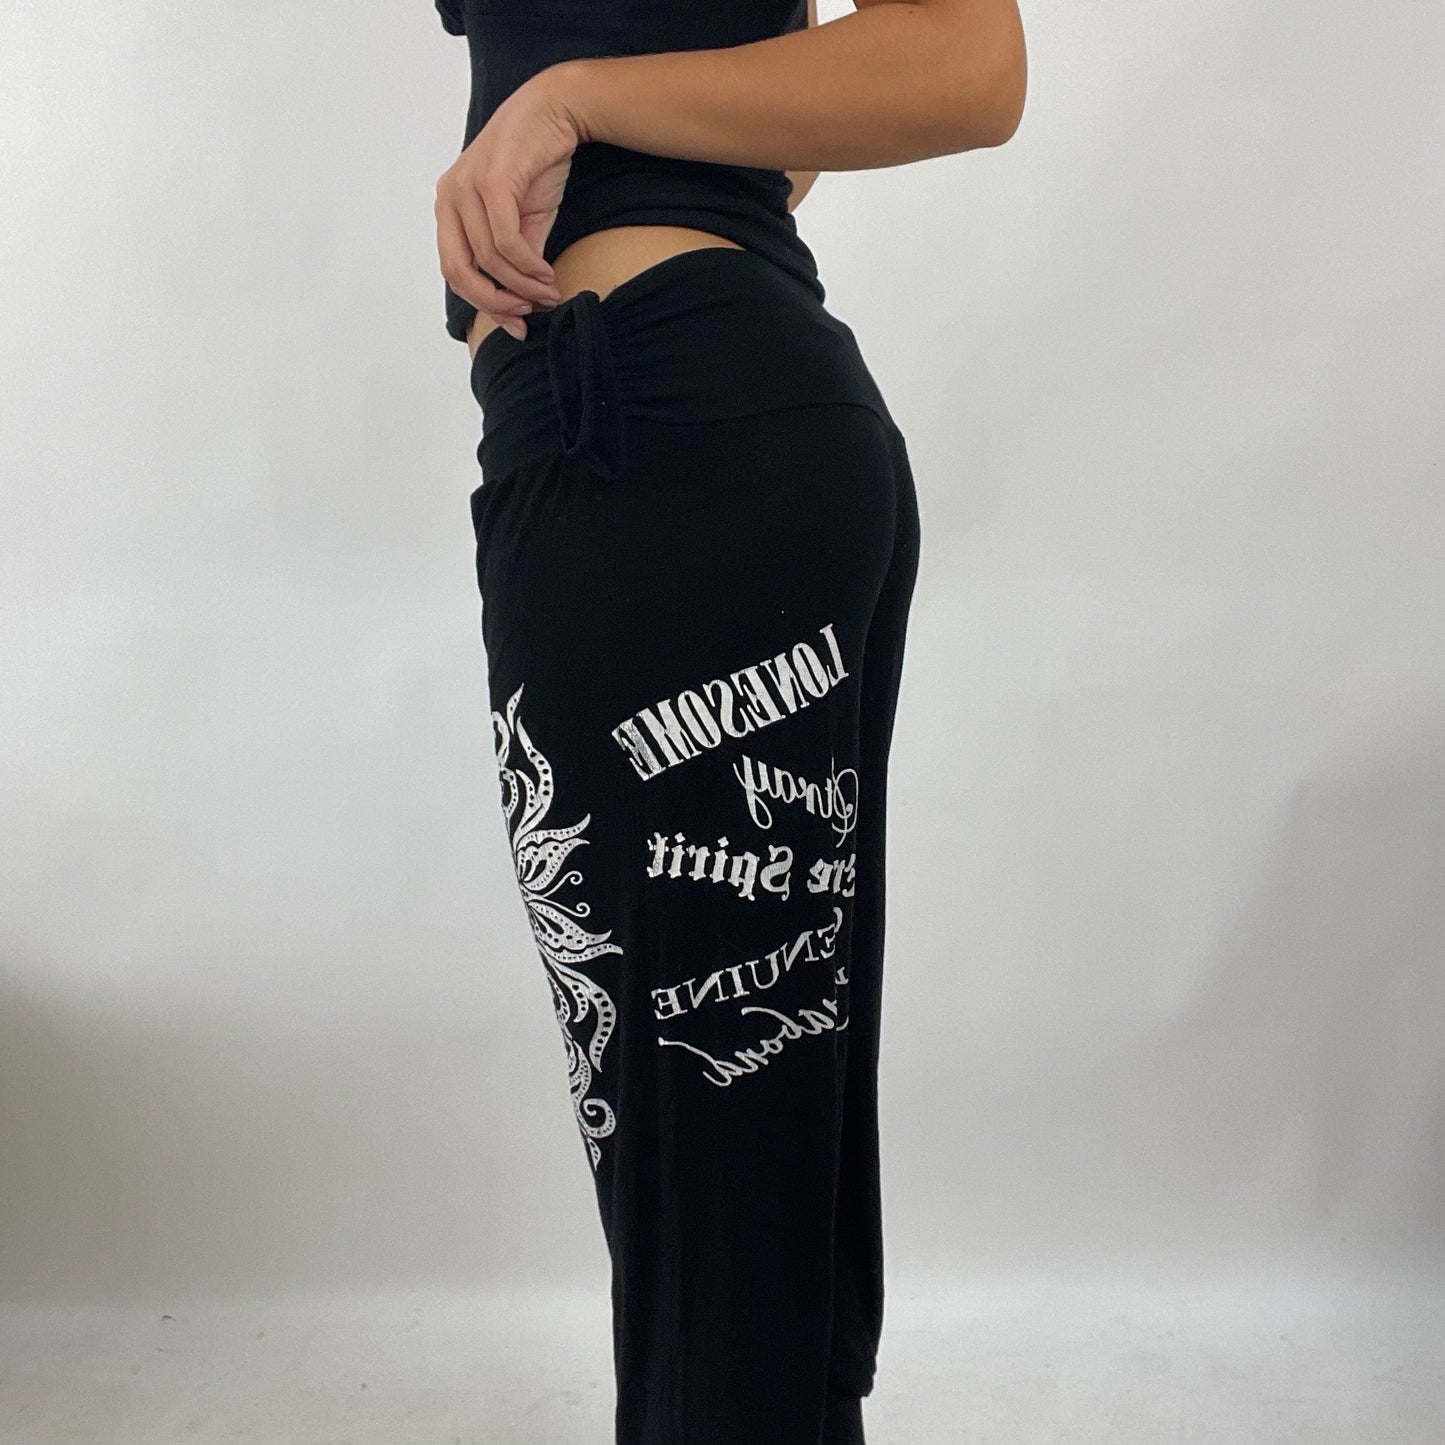 GRUNGE FAIRYCORE DROP | black graphic capri trousers - small